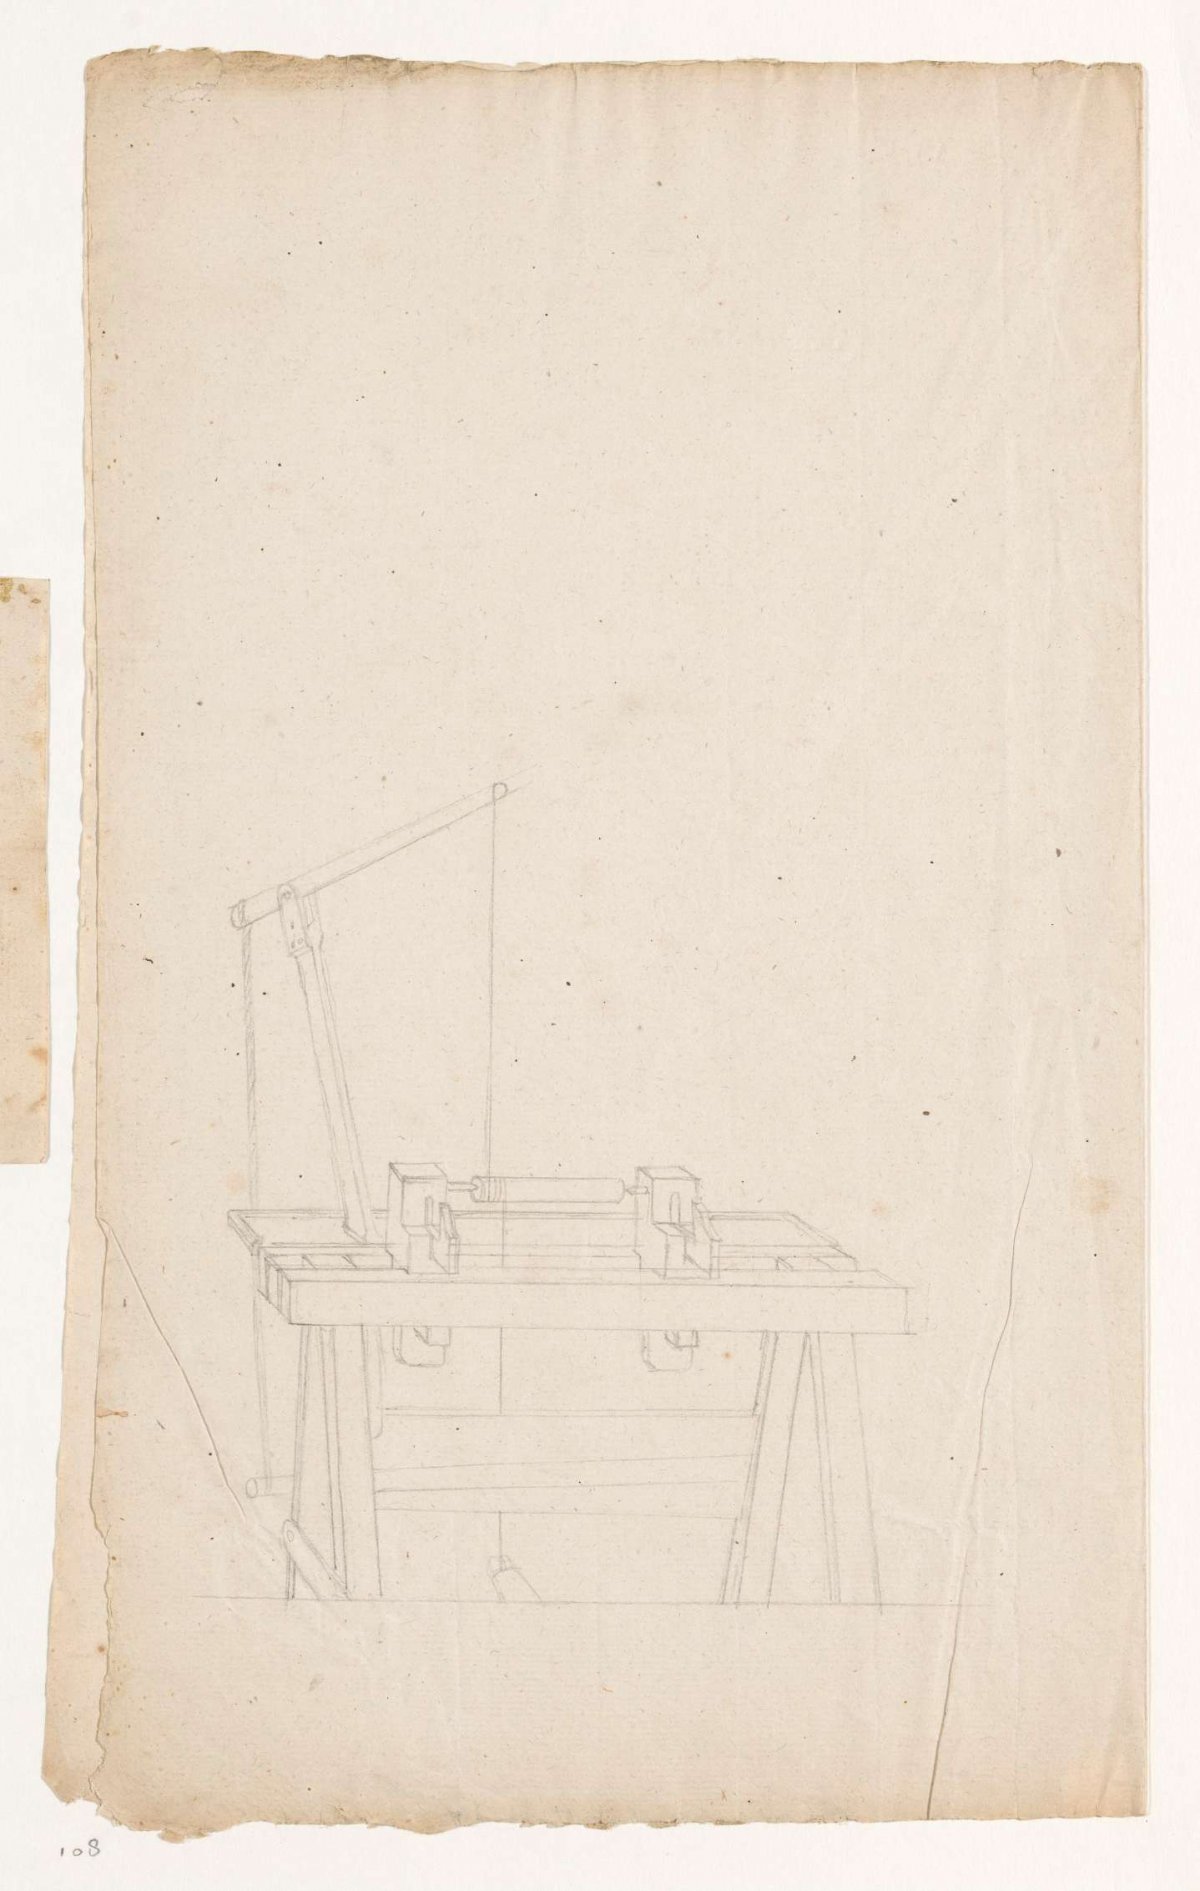 Houten machine, Jan Brandes, 1787 - 1808